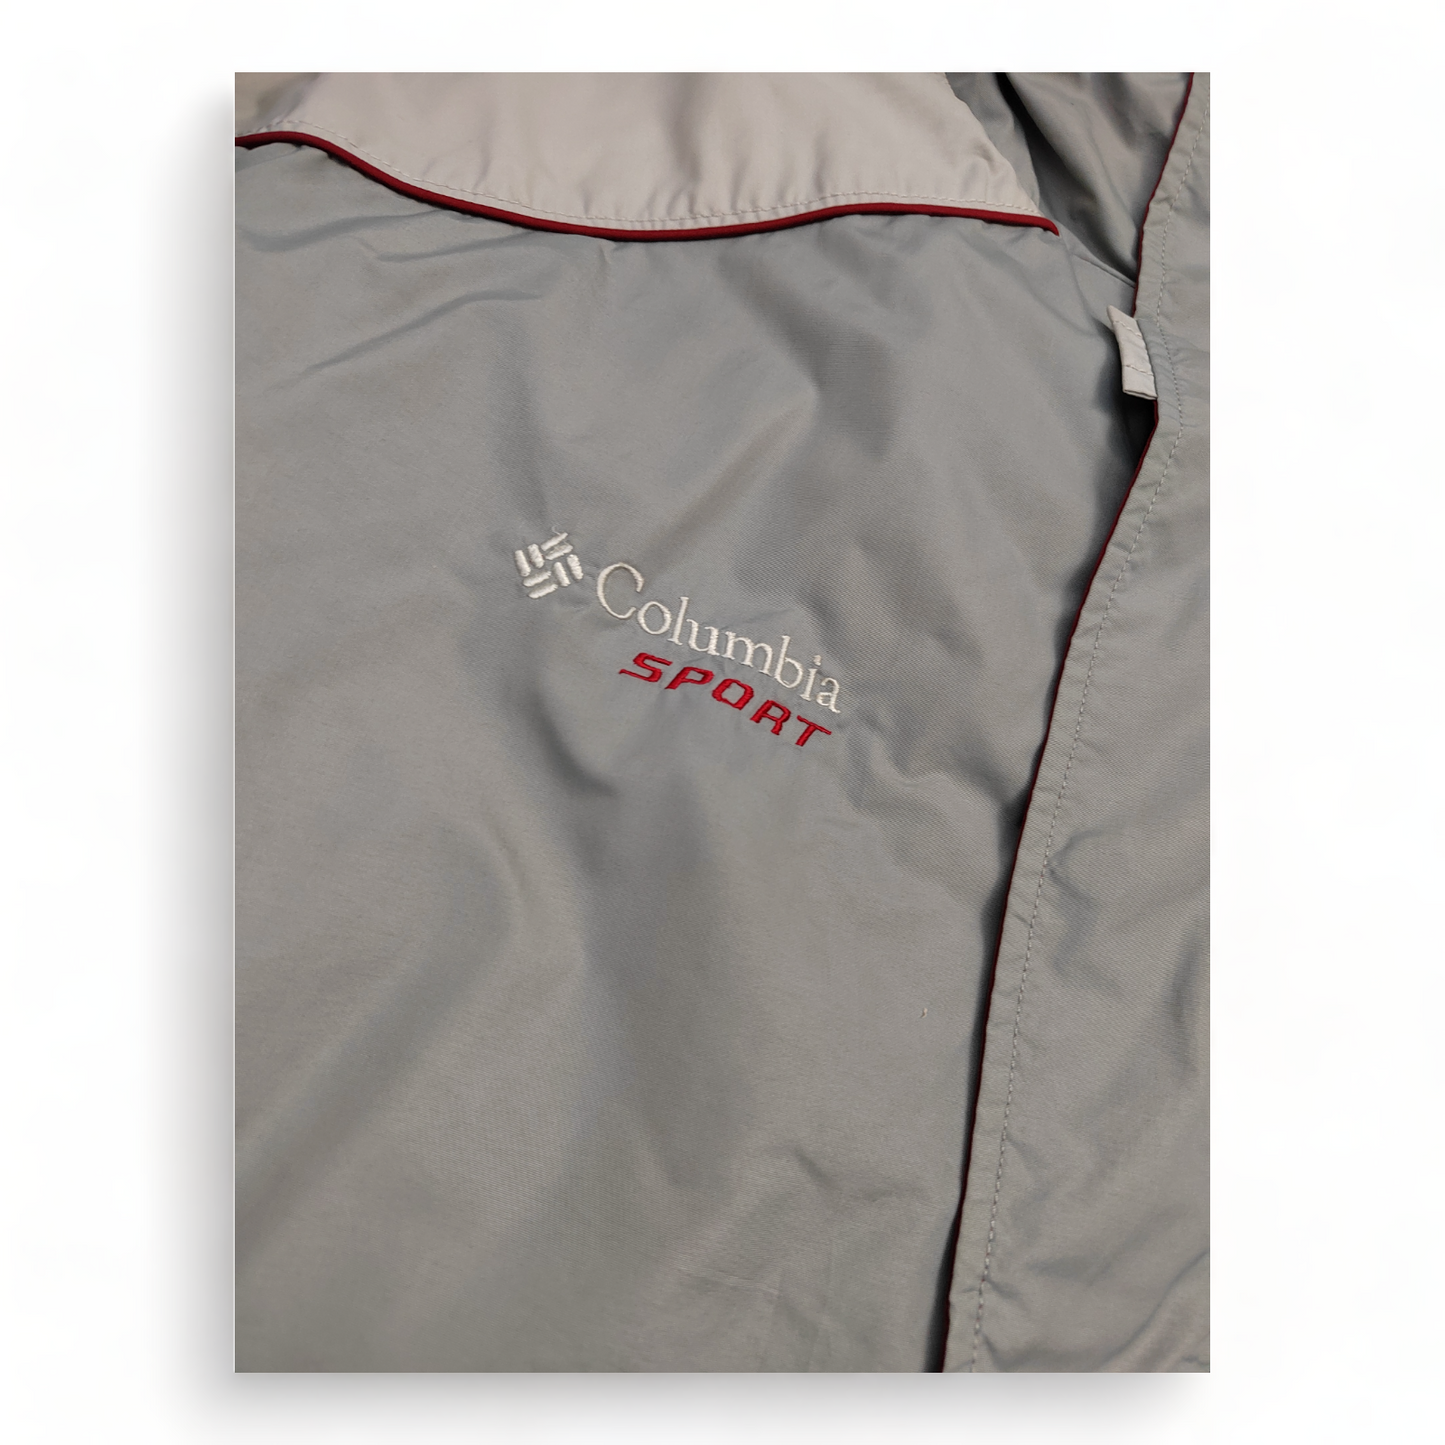 Columbia Puffer Jacket Men’s XL Grey Zip Up Waterproof